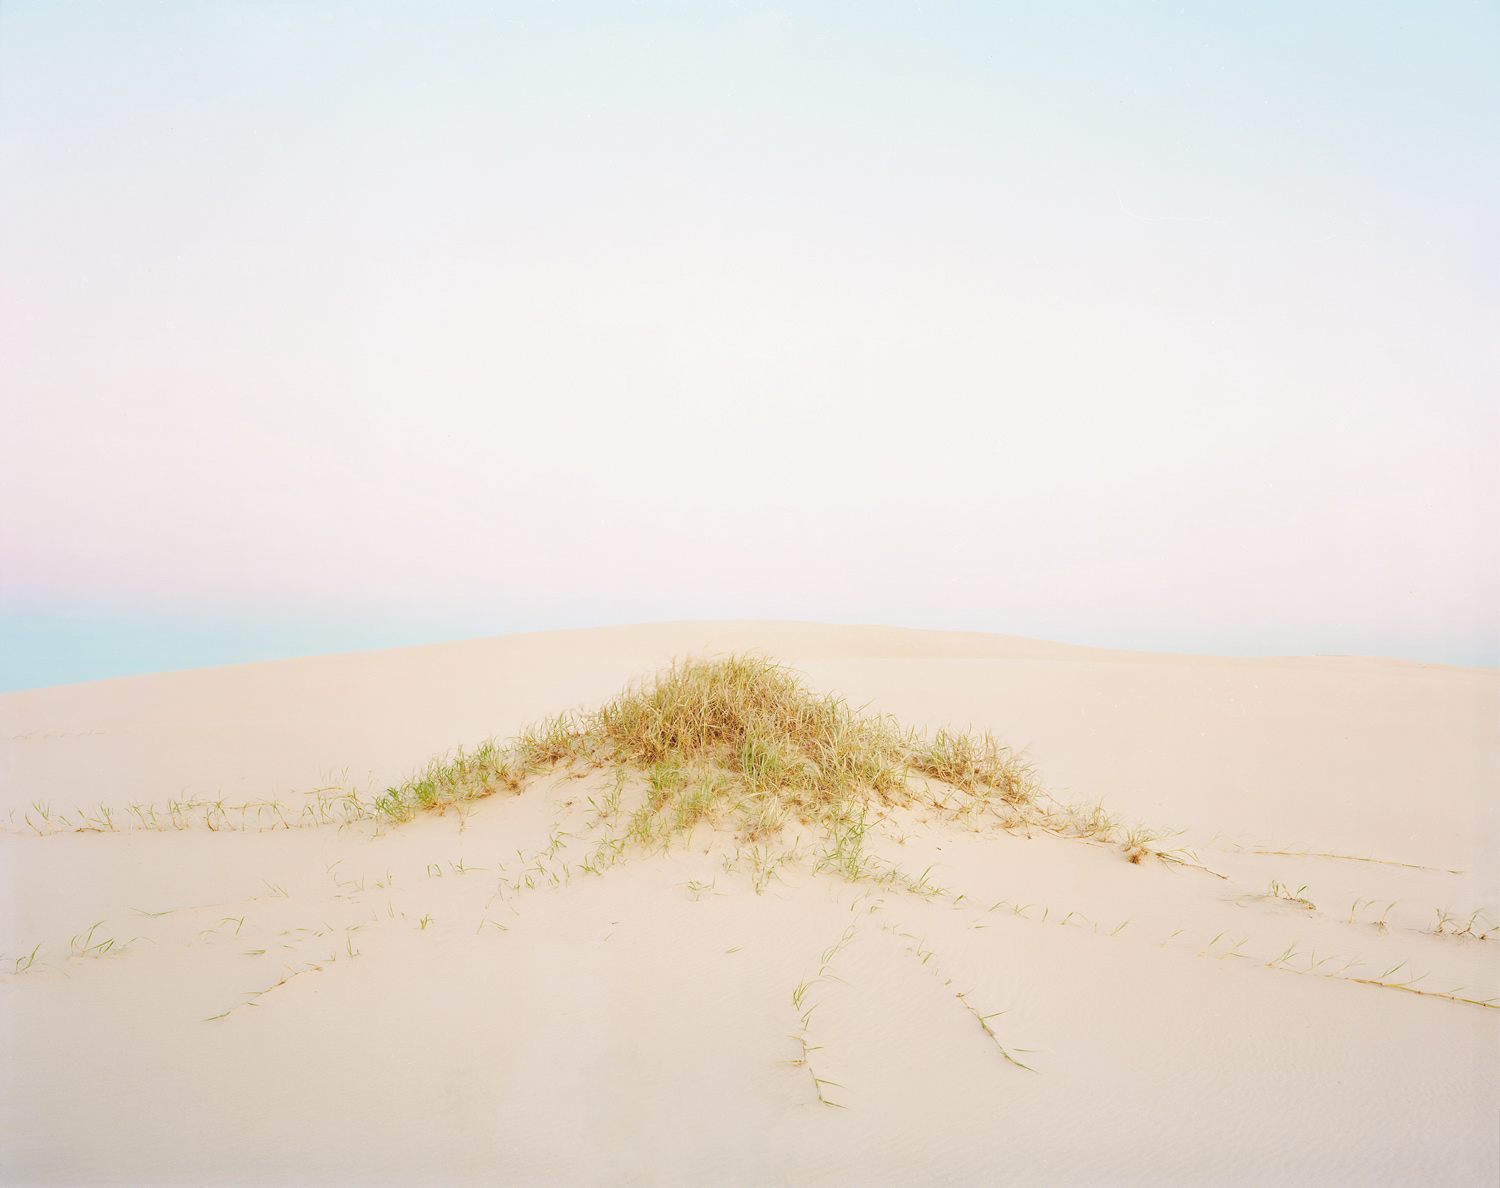  Dune #1, 2010 